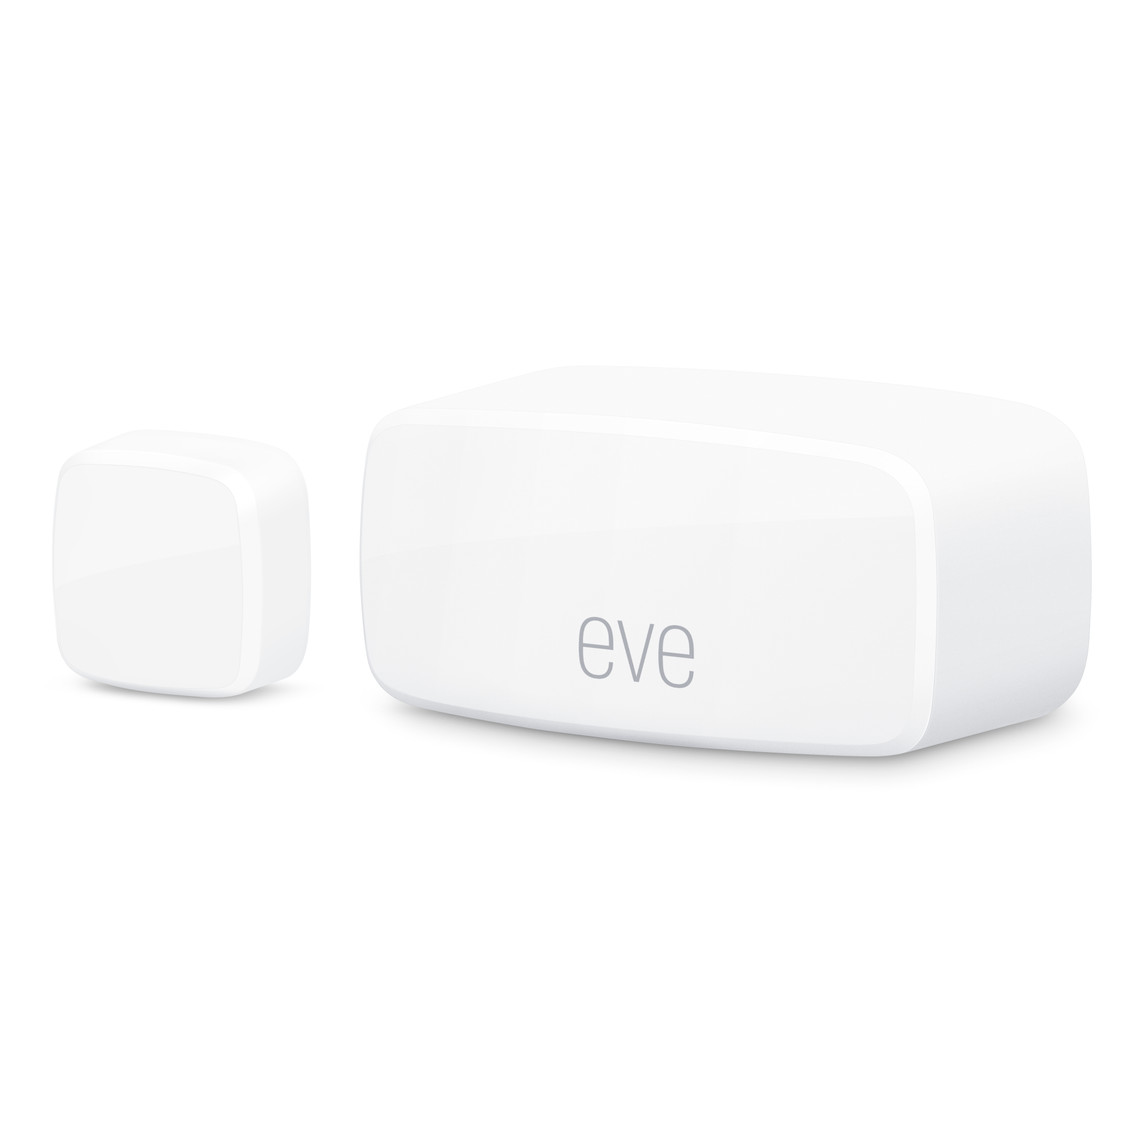 Les capteurs de contact Eve pour portes et fenêtres, compacts, sans fil et compatibles avec Matter, sont présentés ici avec le logo eve bien en évidence.